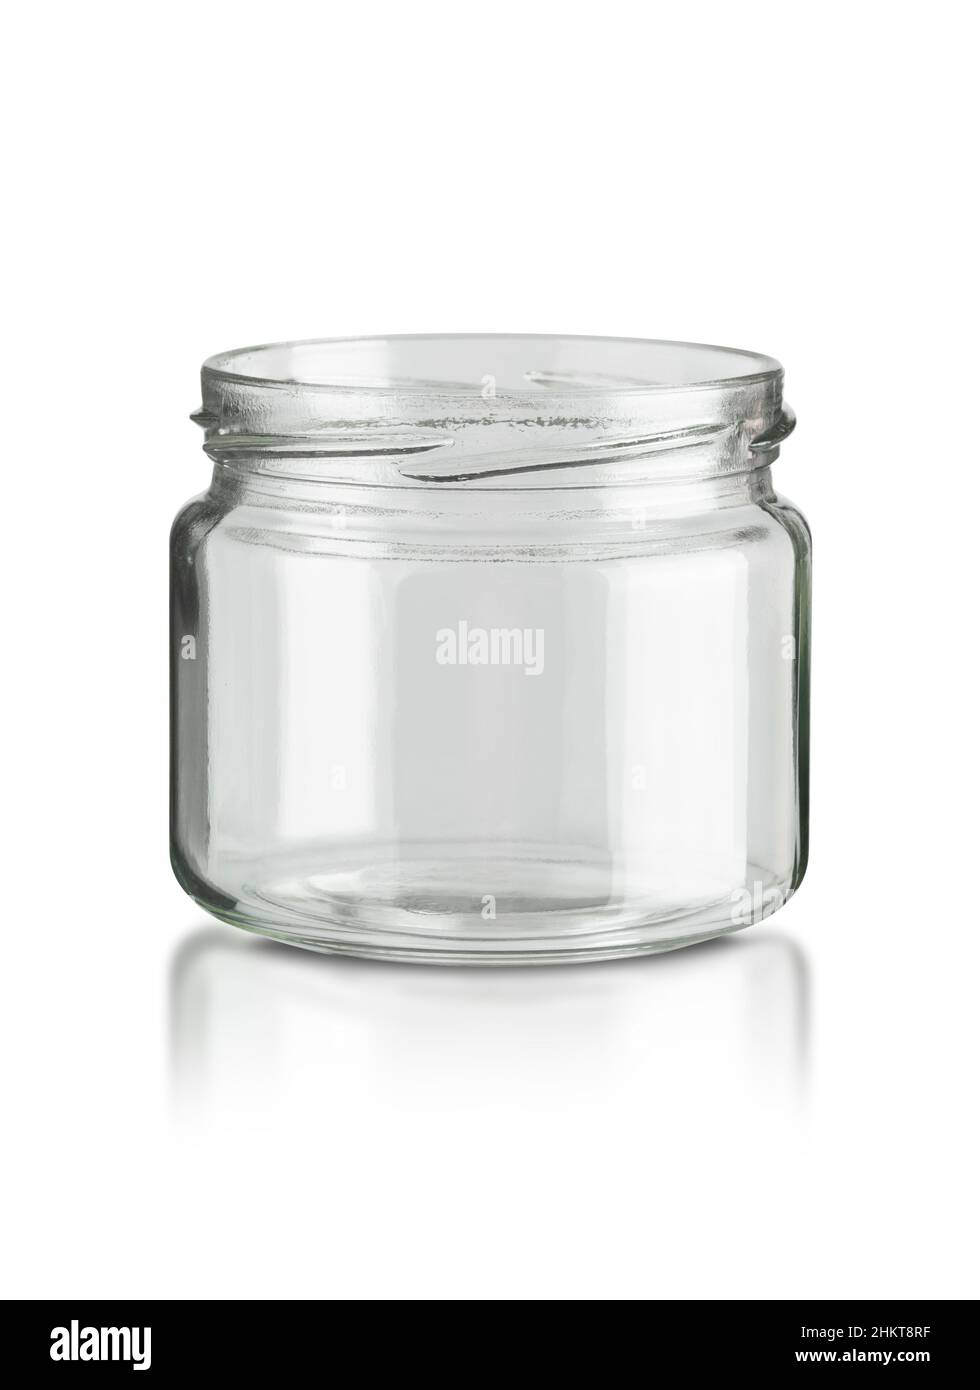 Utensilio de cocina con jarra de cristal aislado sobre fondo blanco con ruta de corte Foto de stock